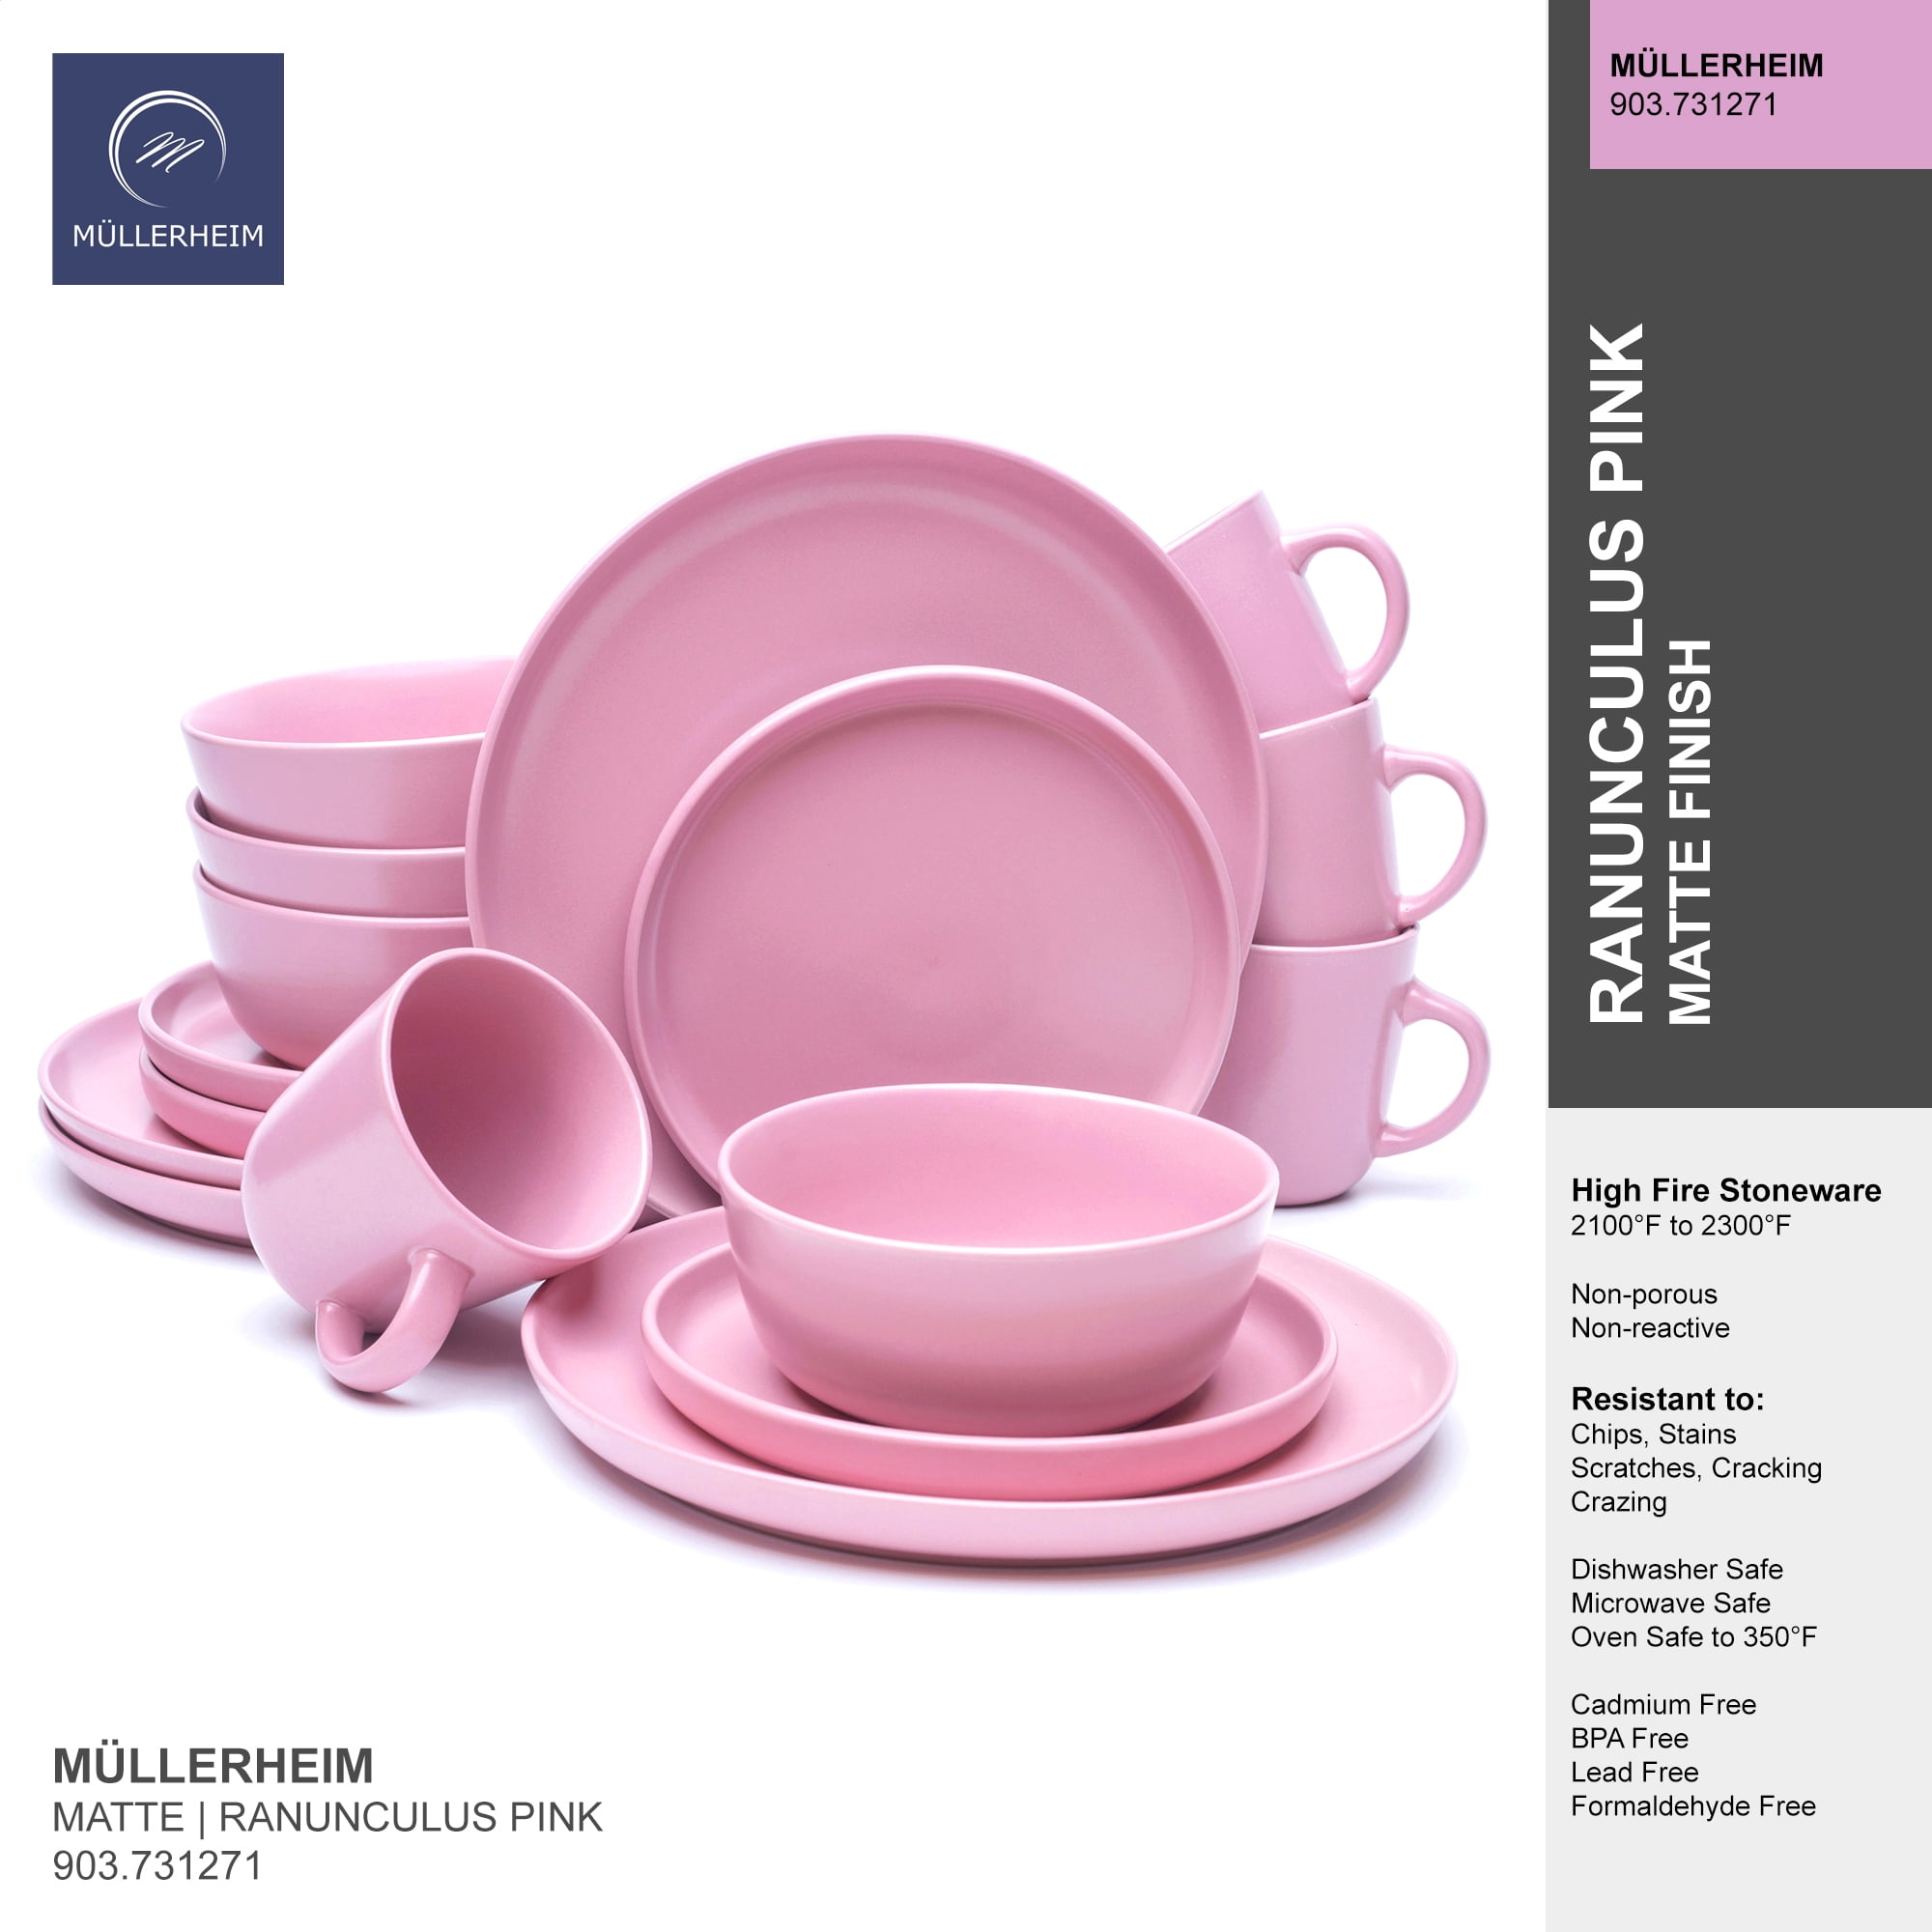 Tuscan Pink Mixing Bowls – White's Mercantile